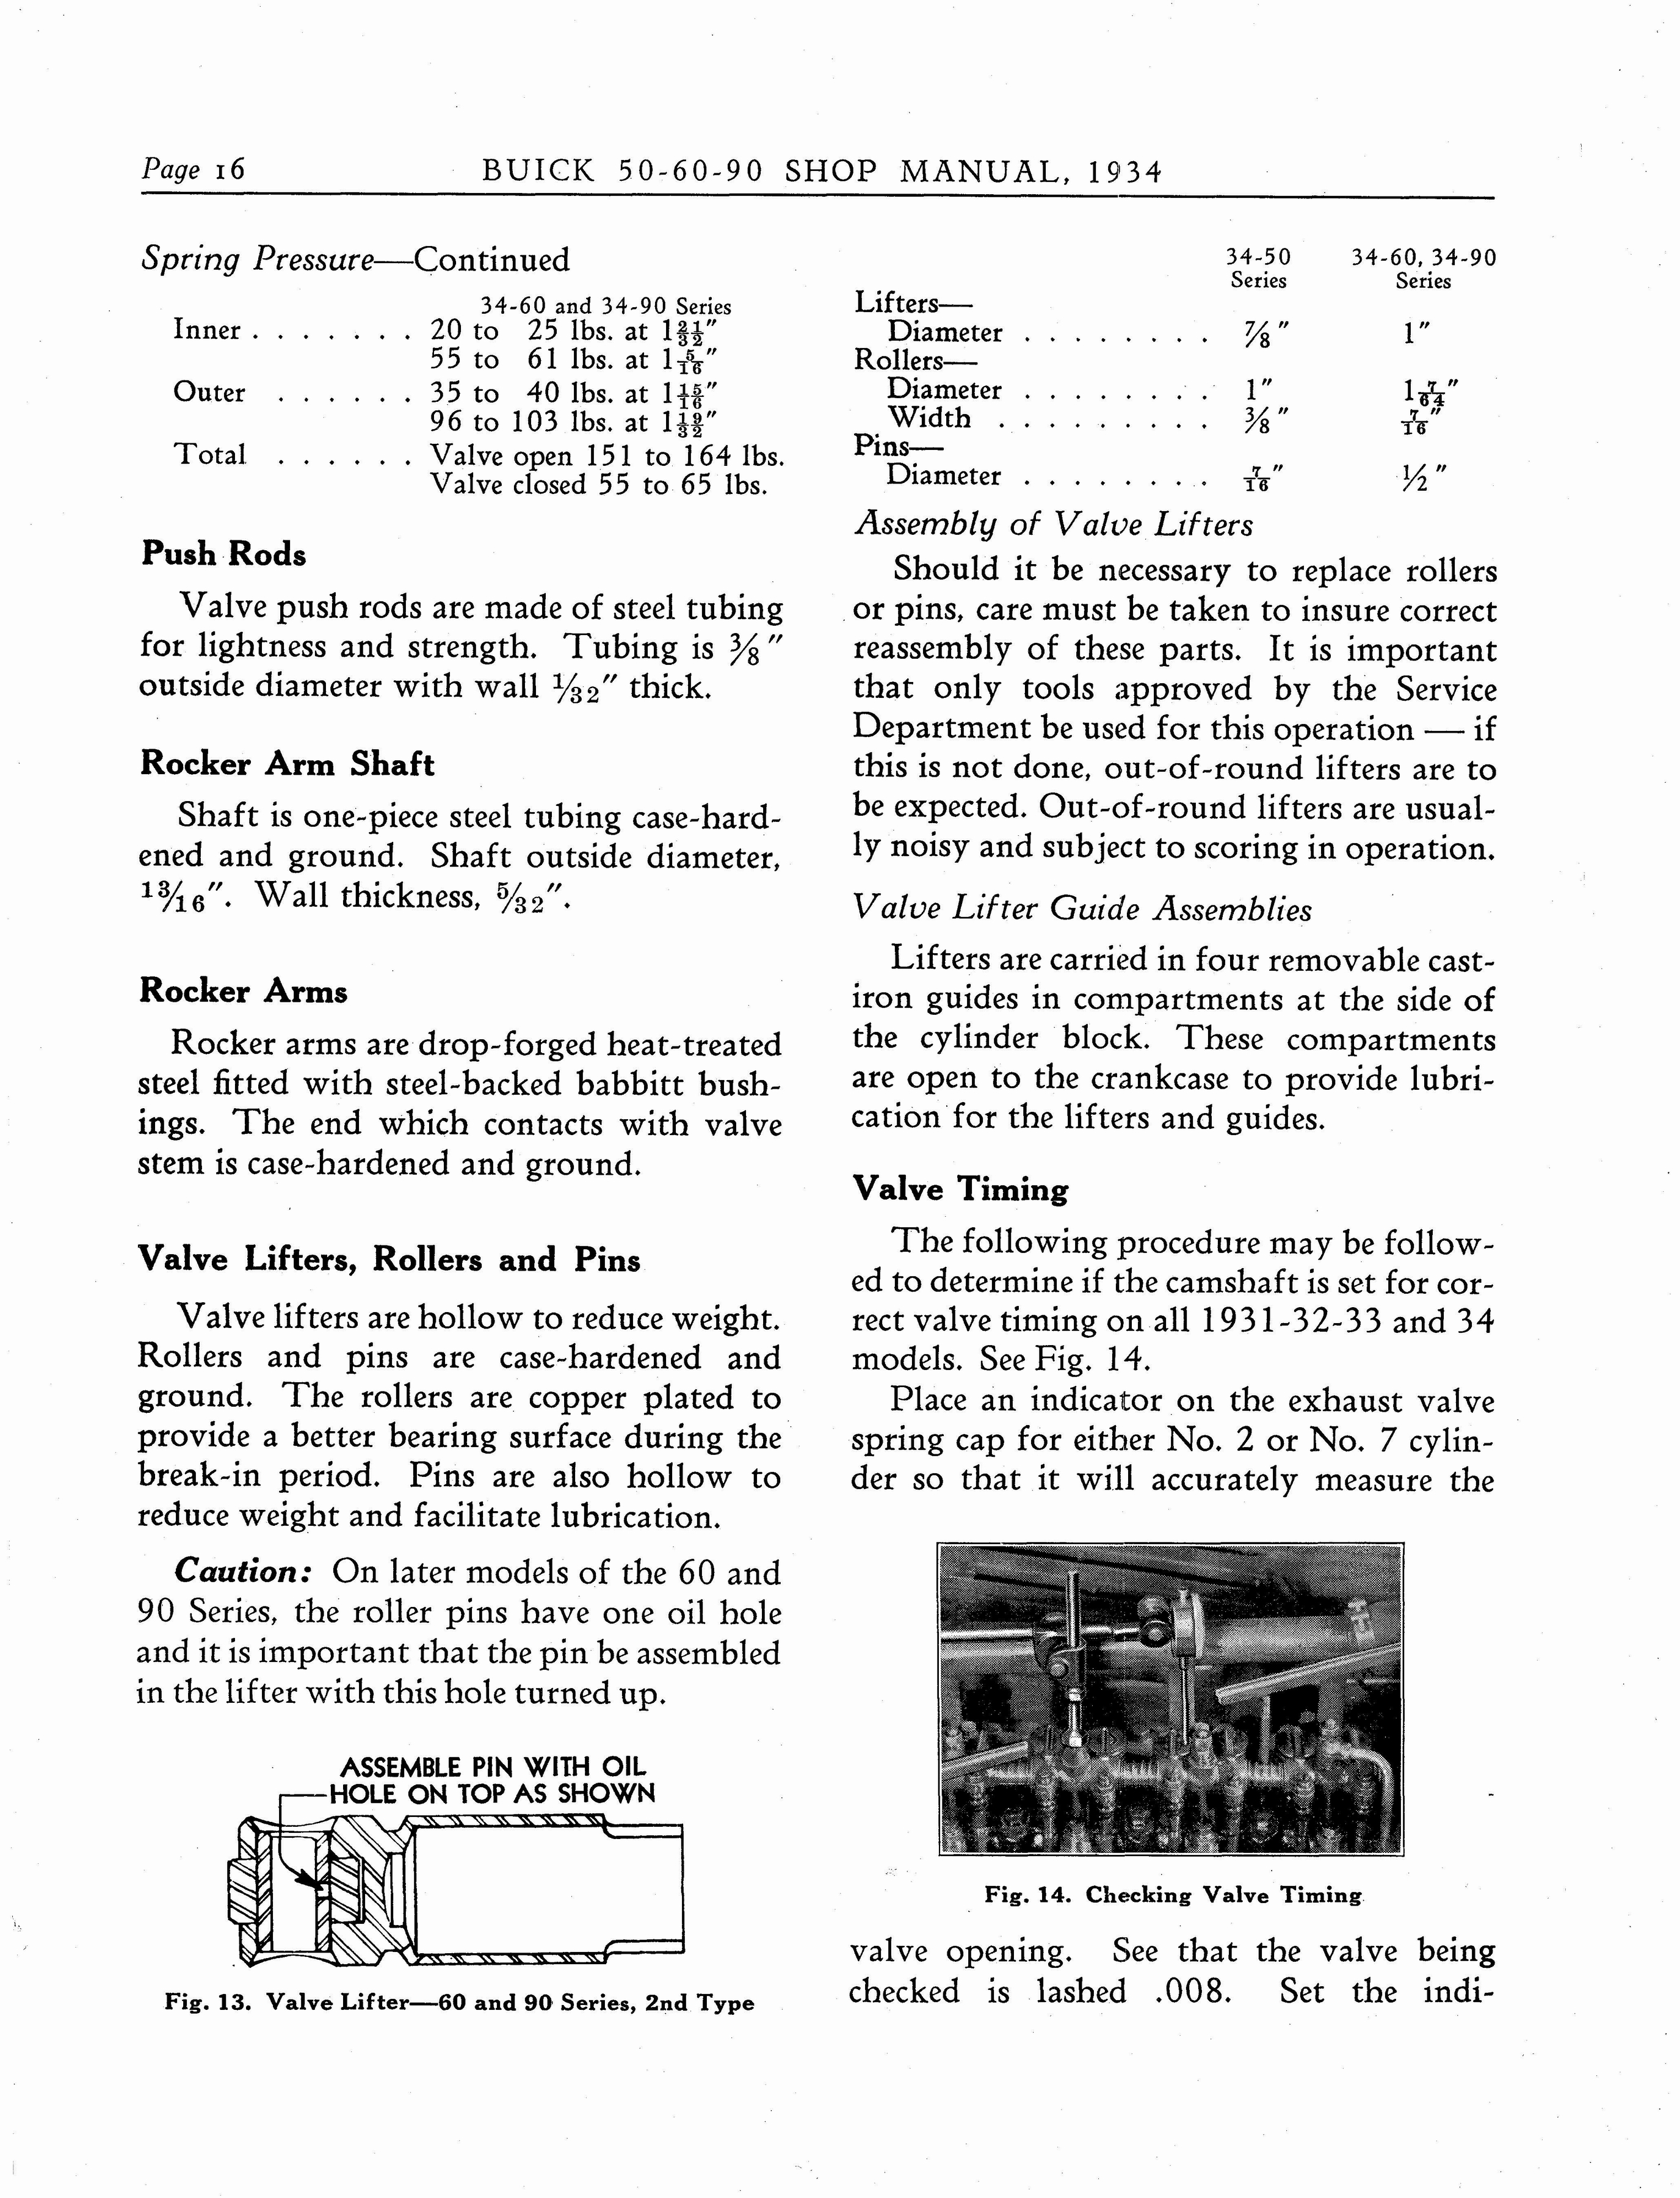 n_1934 Buick Series 50-60-90 Shop Manual_Page_017.jpg